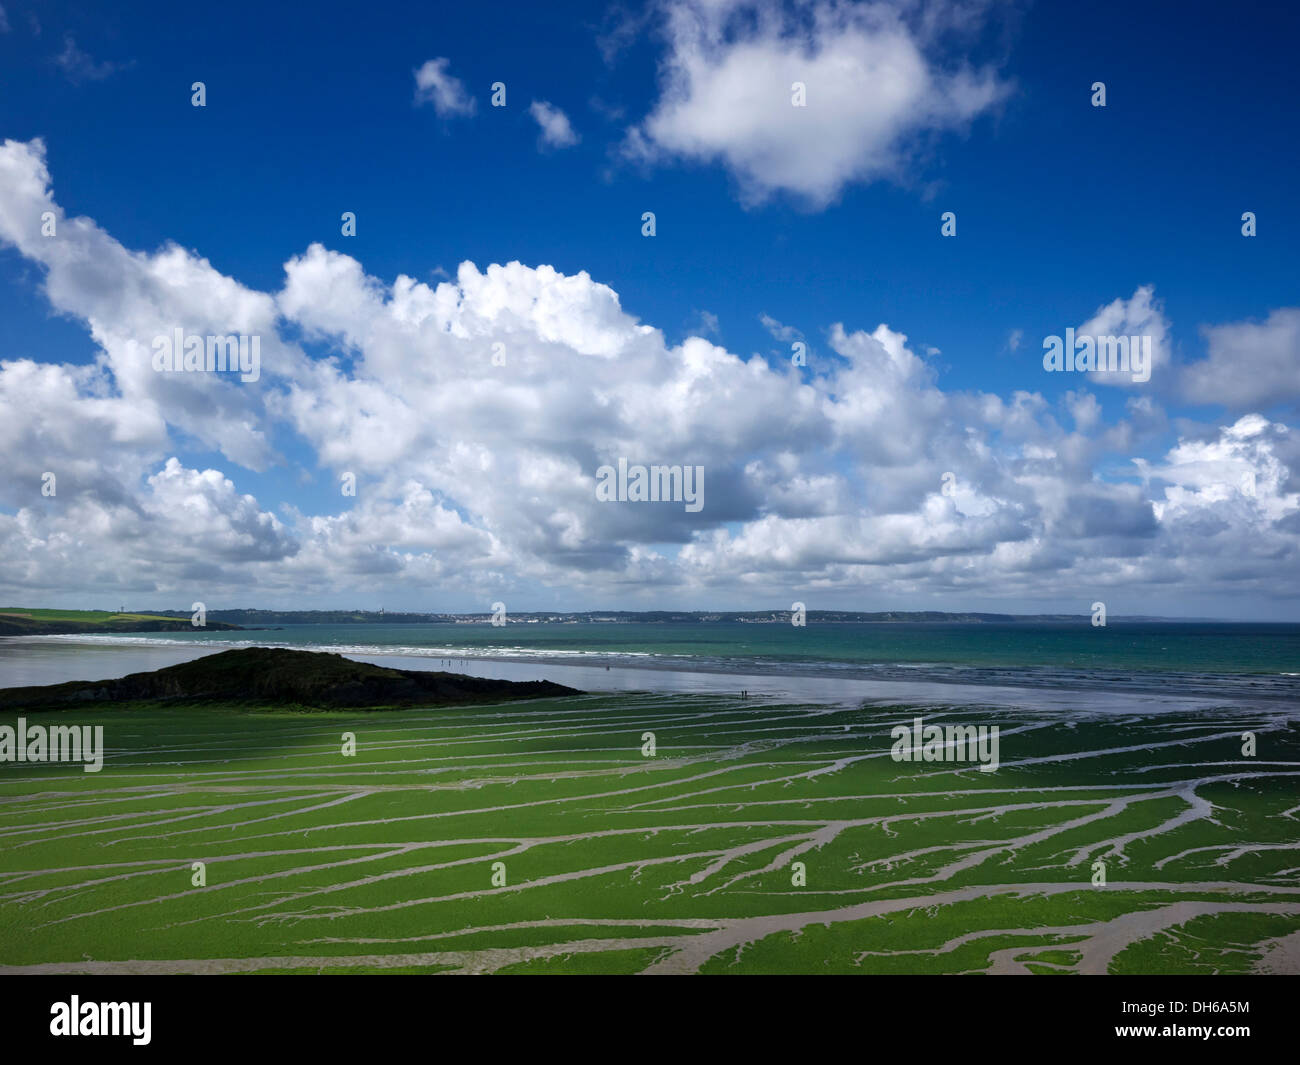 La lechuga de mar (Ulva armoricana), algas en la bahía de Douarnenez, Finisterre, Bretaña, Francia, Europa, publicground Foto de stock